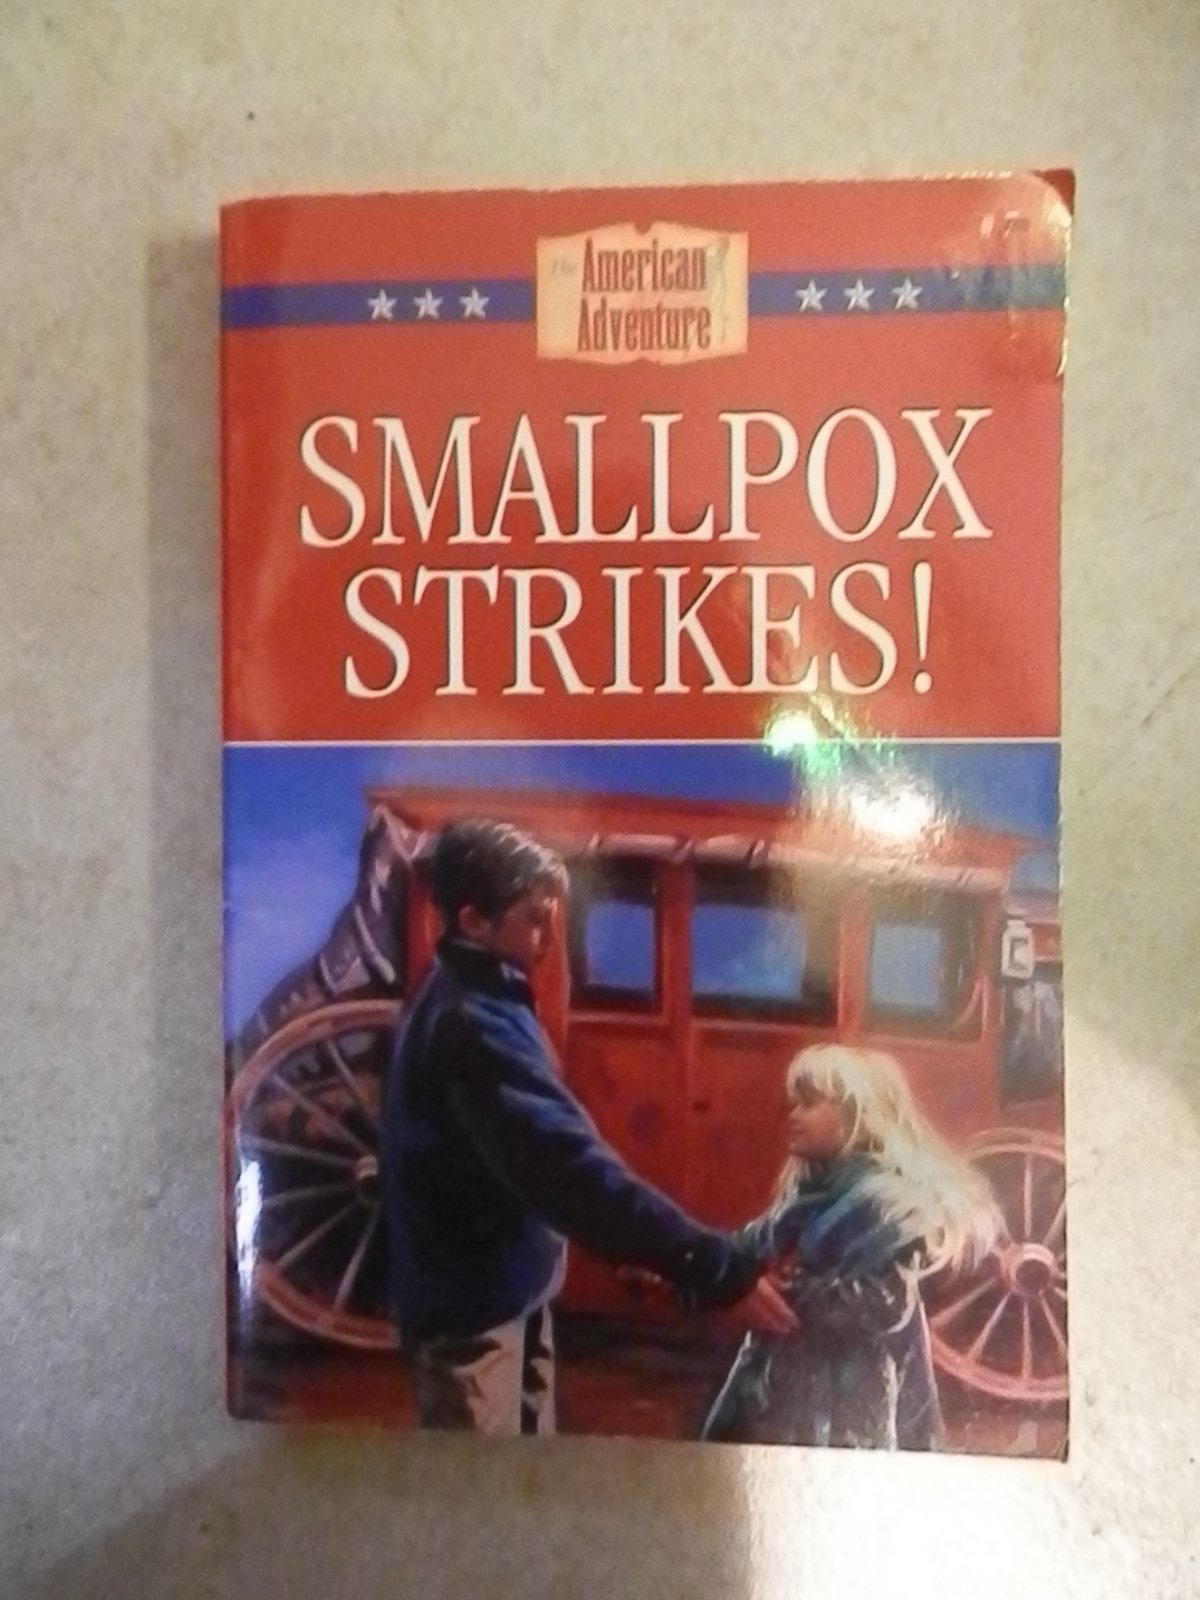 Smallpox strikes!